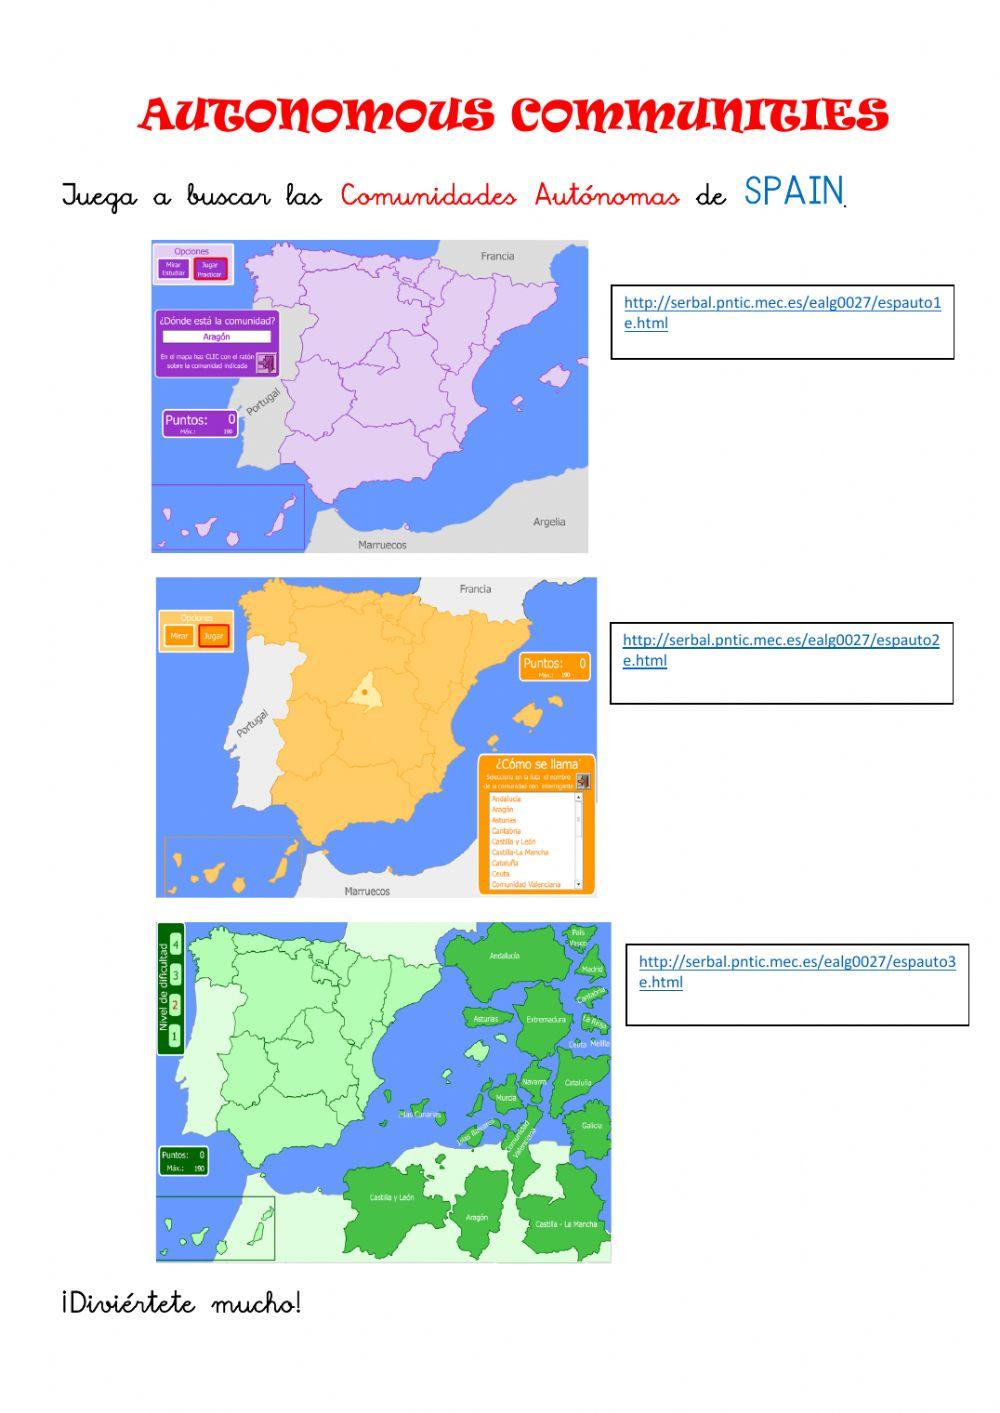 AUTONOMOUS COMMUNITIES OF SPAIN